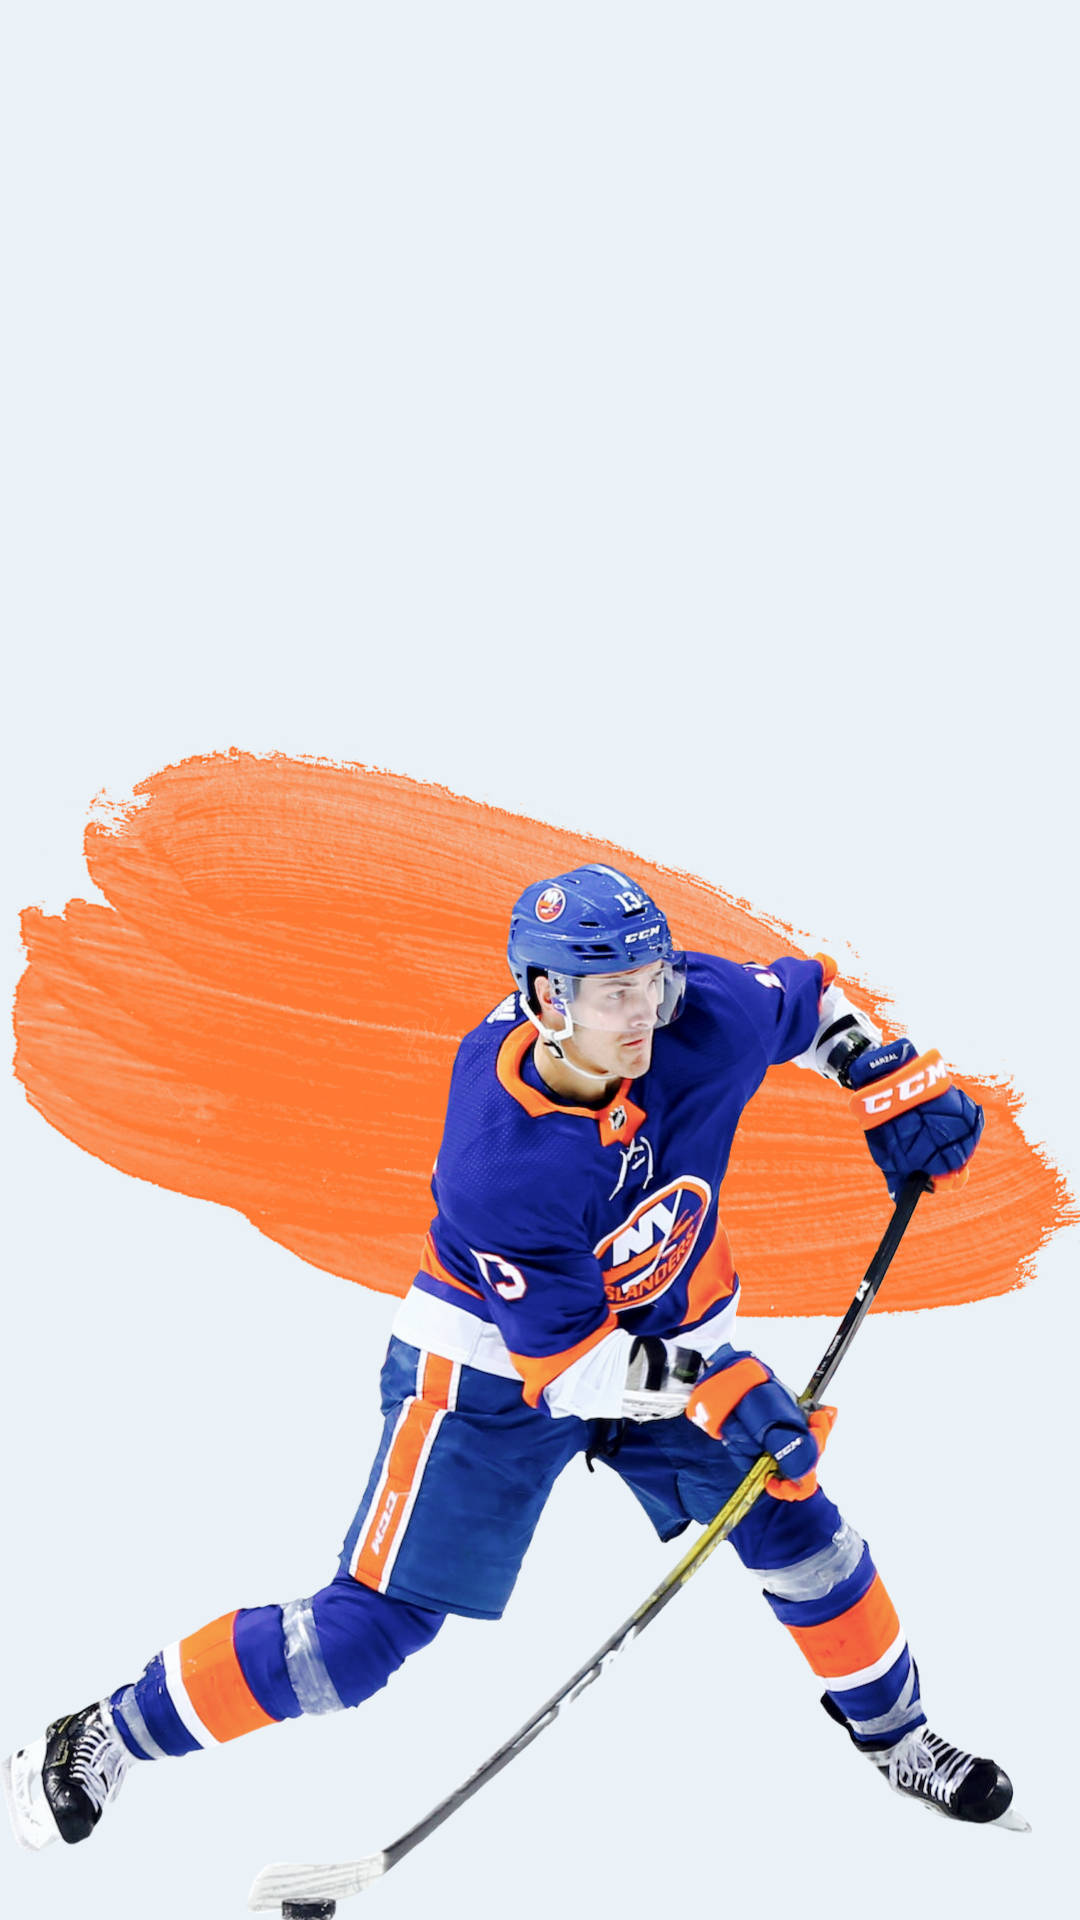 Kanadensiskaishockeyspelaren Mathew Barzal Kreativ Digital Konst. Wallpaper